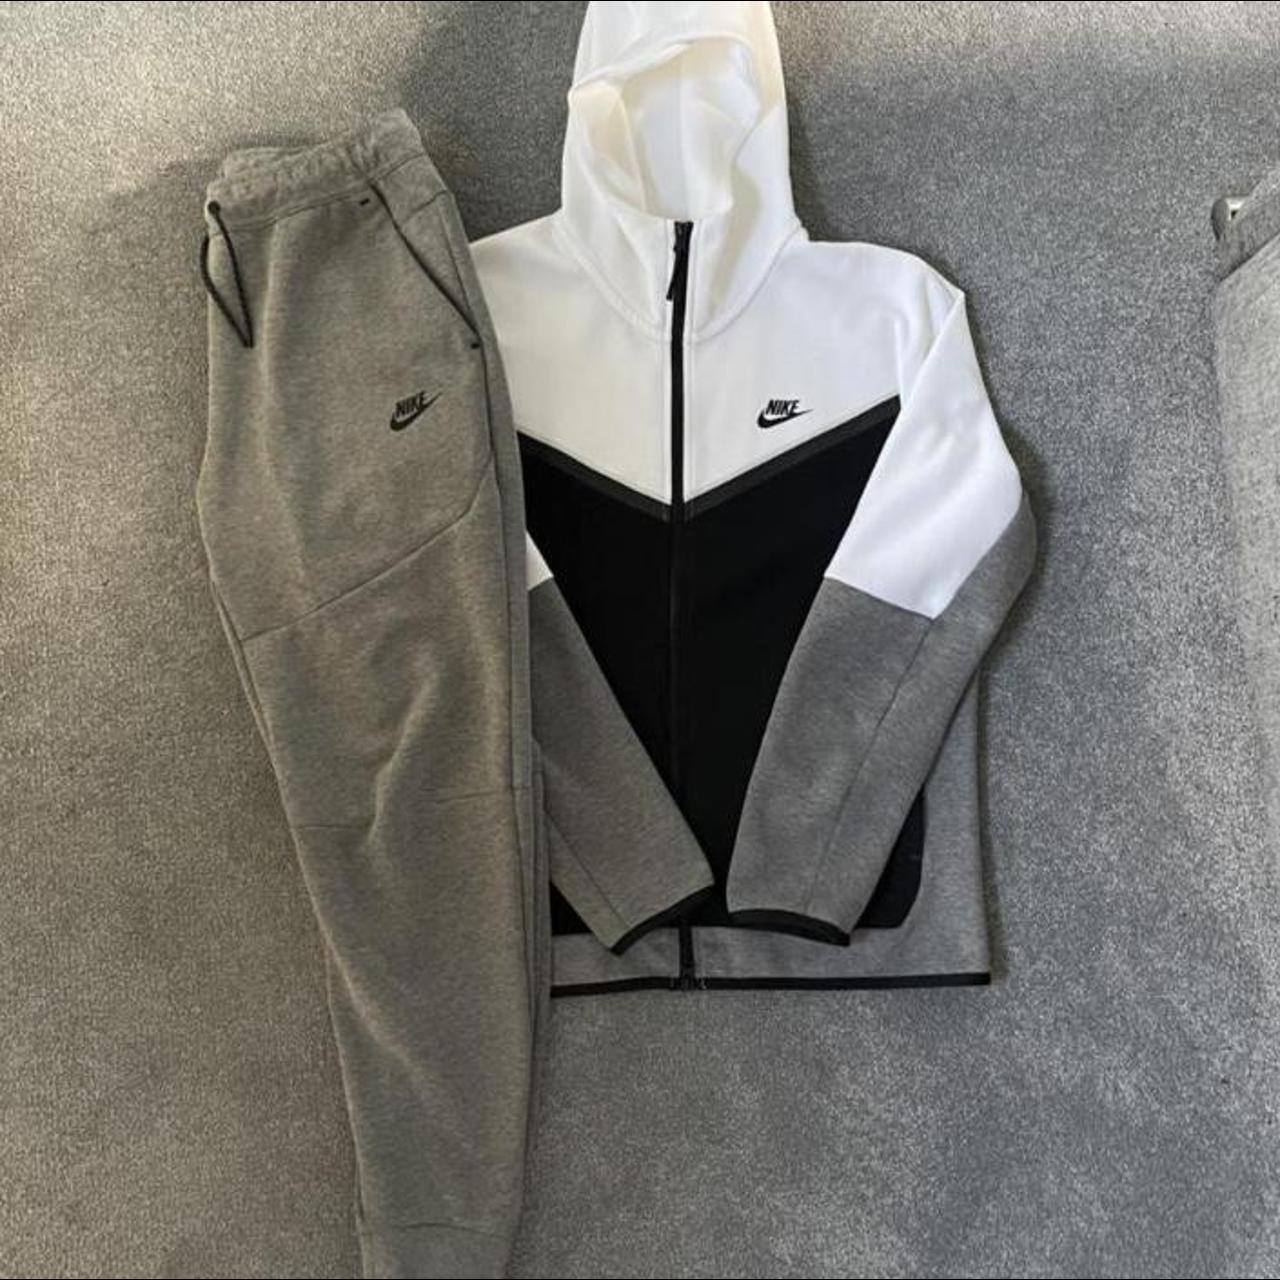 Men’s Nike tech fleece tracksuit full set Size small... - Depop